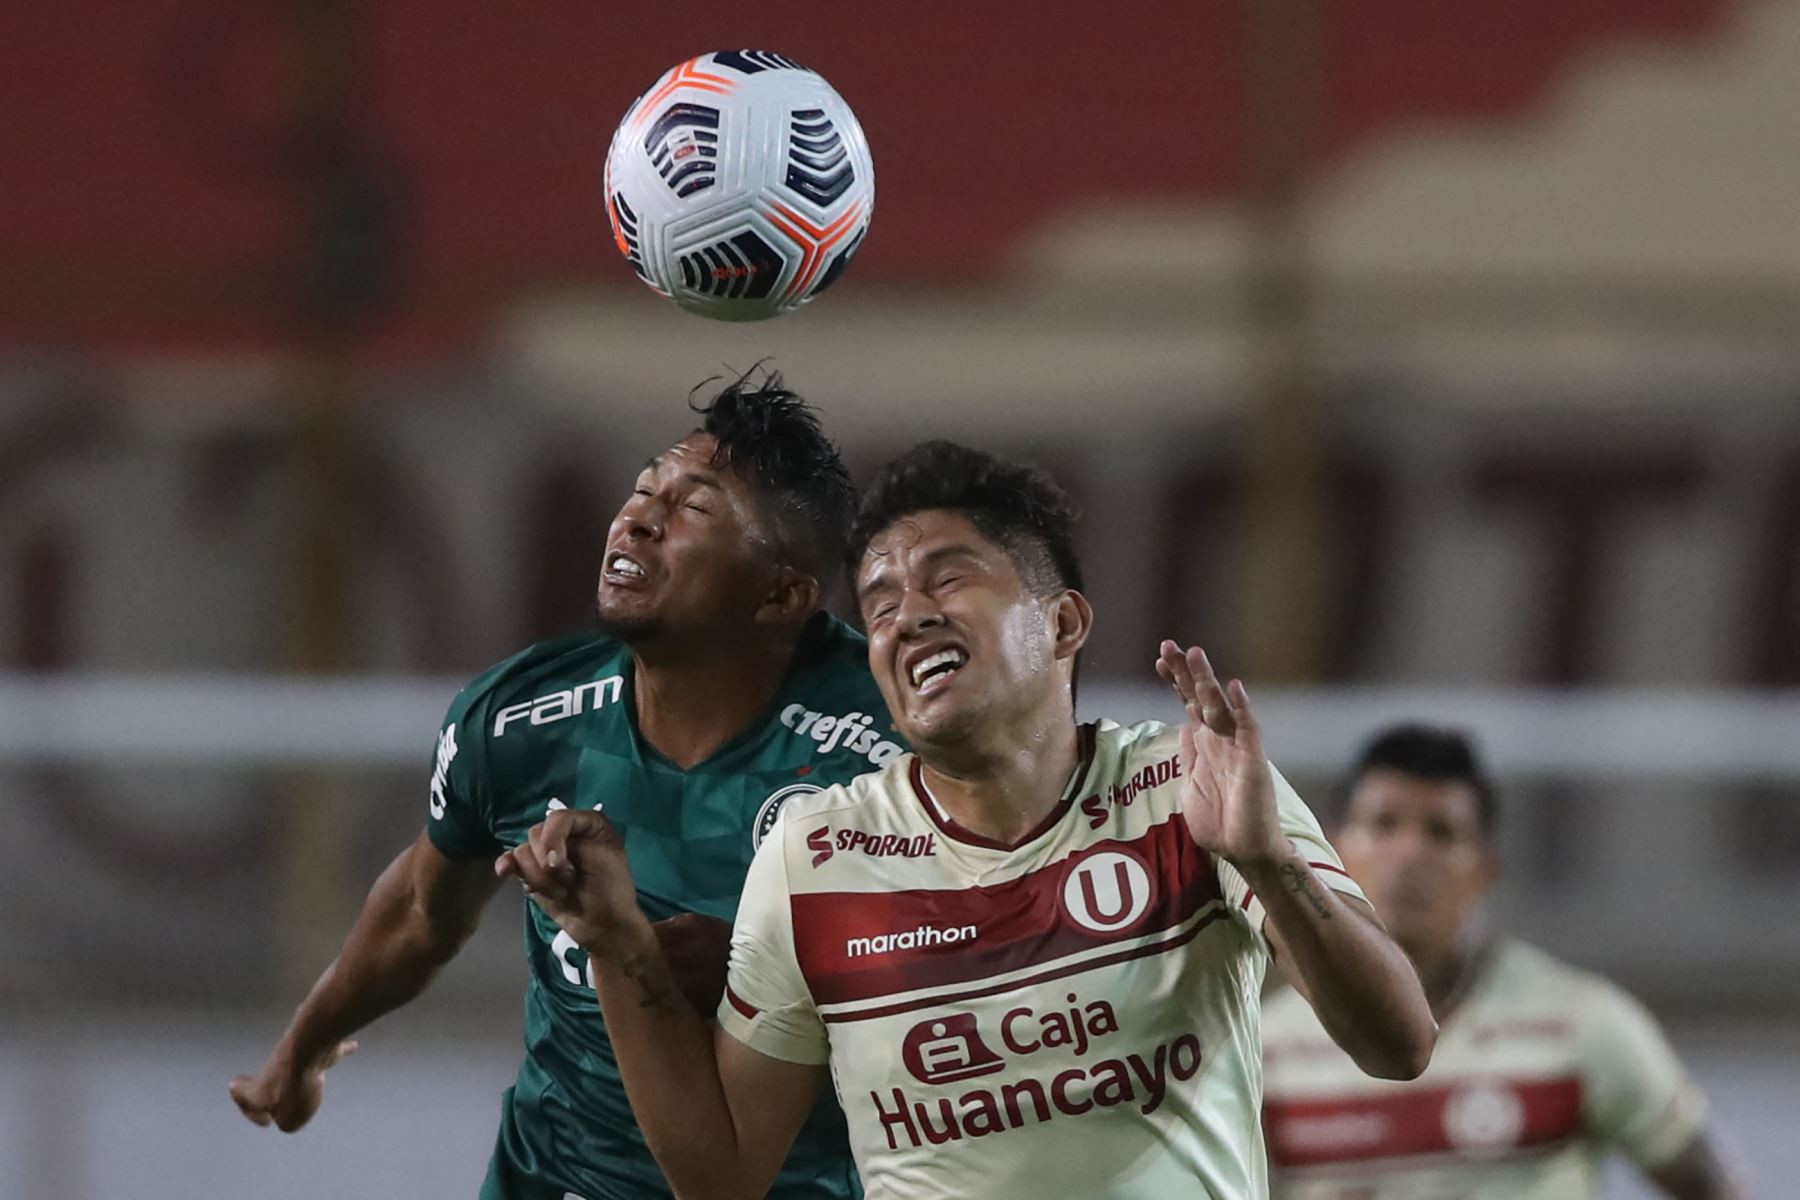 El jugador Rony de Palmeiras y el jugador  Luis Valverde de Universitario  compiten por el balón durante el partido de la fase de grupos del torneo de fútbol Copa Libertadores.
Foto: AFP